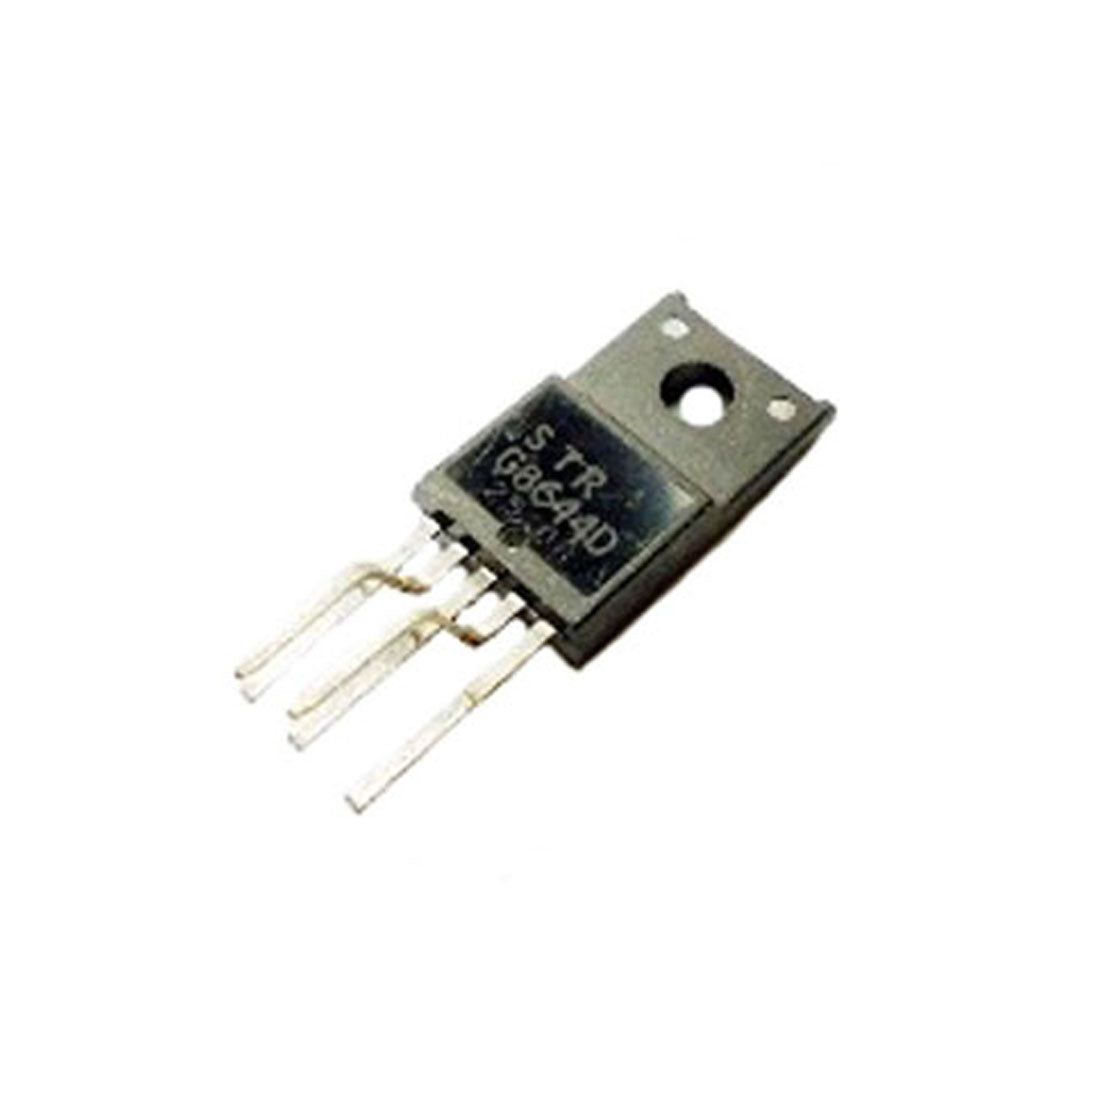 STRG8644D componente elettronico, circuito integrale, transistor, 5 contatti